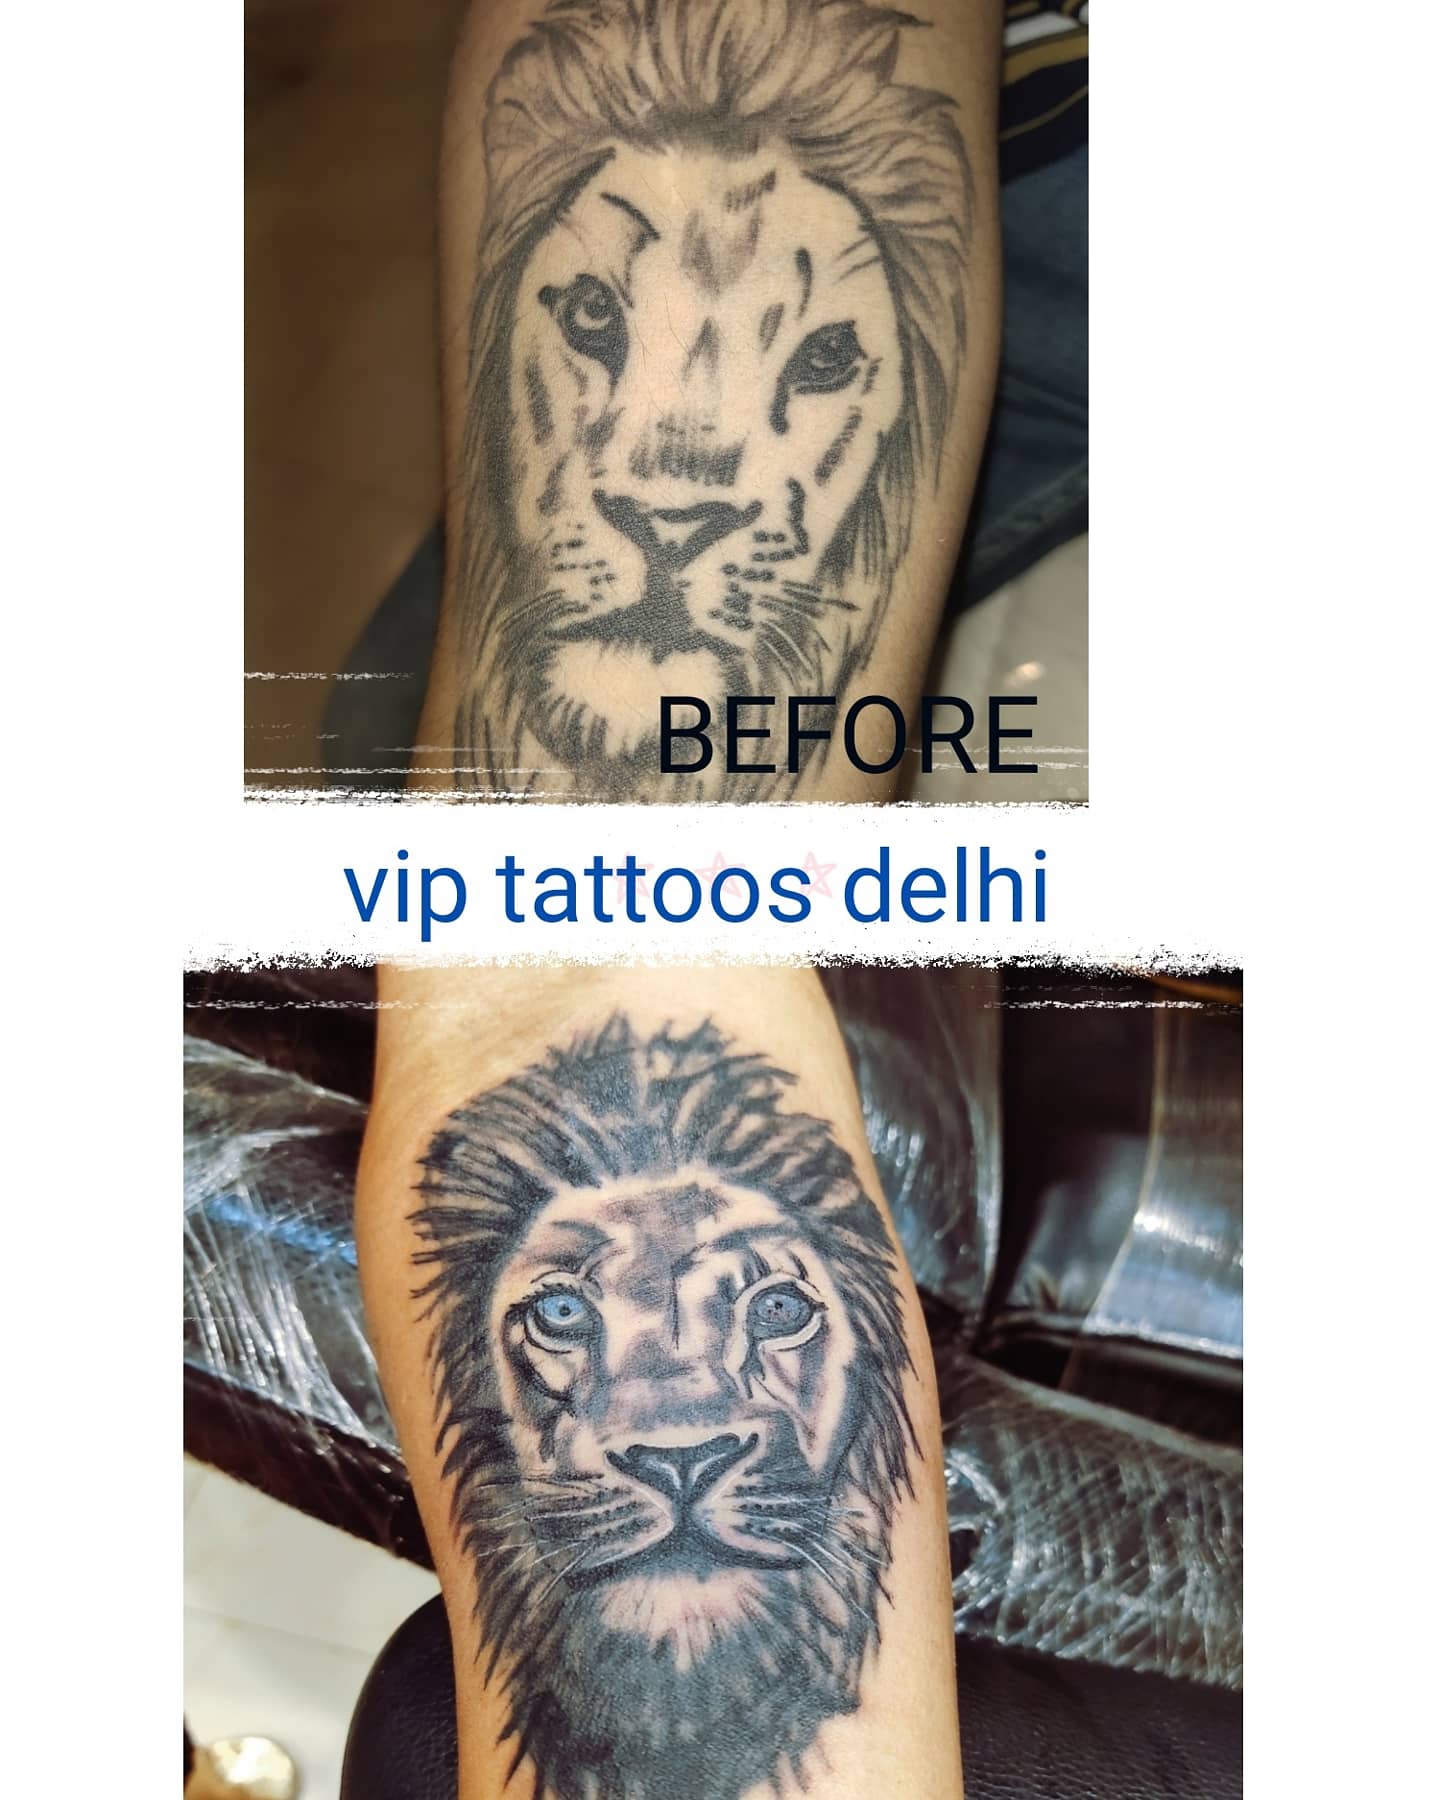 tattoo artist Madhulika Upadhyay